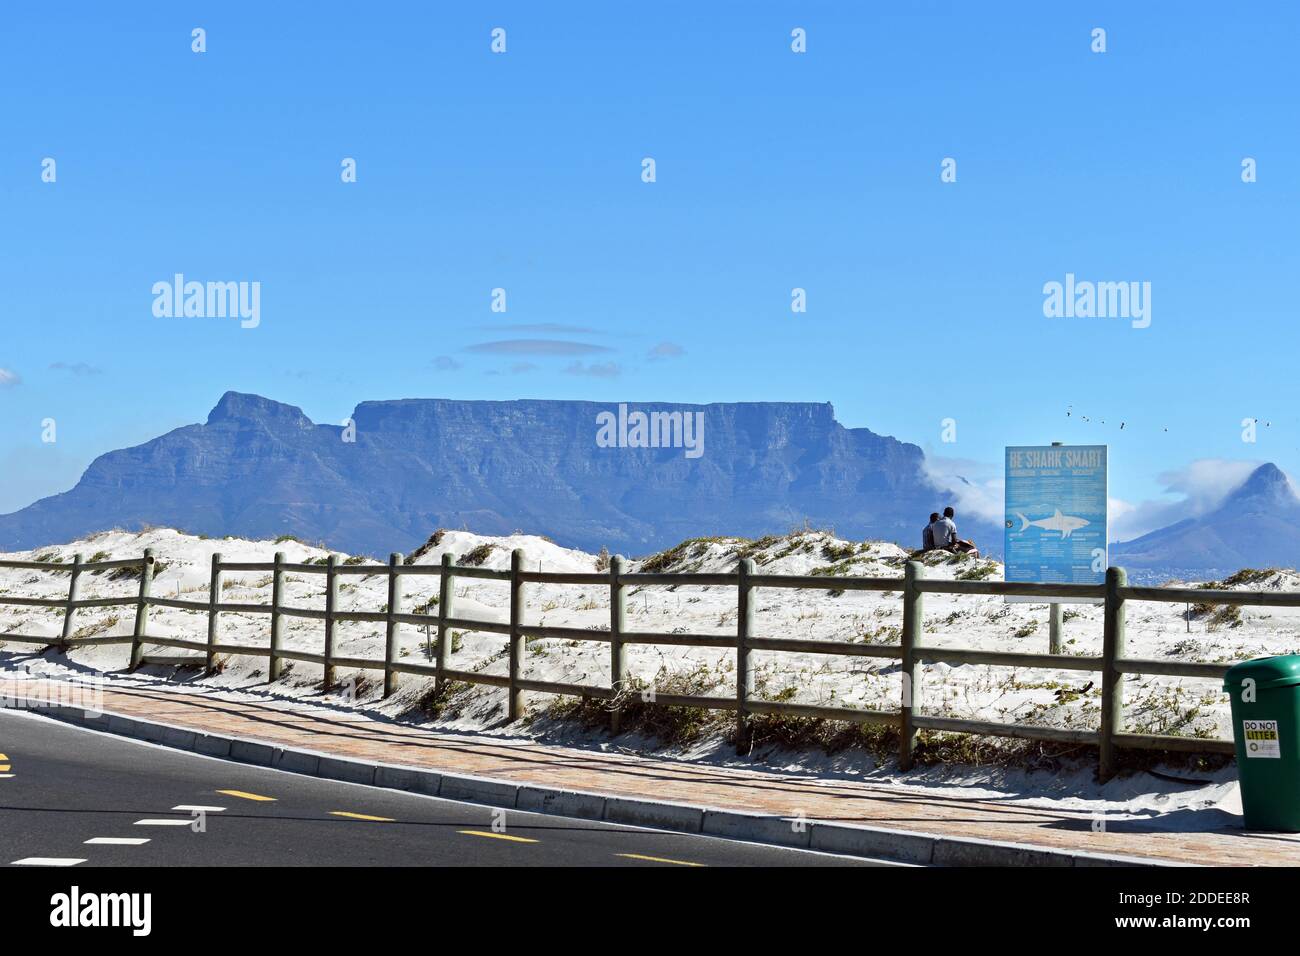 Table Mountain, Devils Peak e Lions Head visti dalla strada sulla spiaggia attraverso Table Bay. Due uomini siedono sulla sabbia accanto a un cartello intelligente di essere squalo, Foto Stock